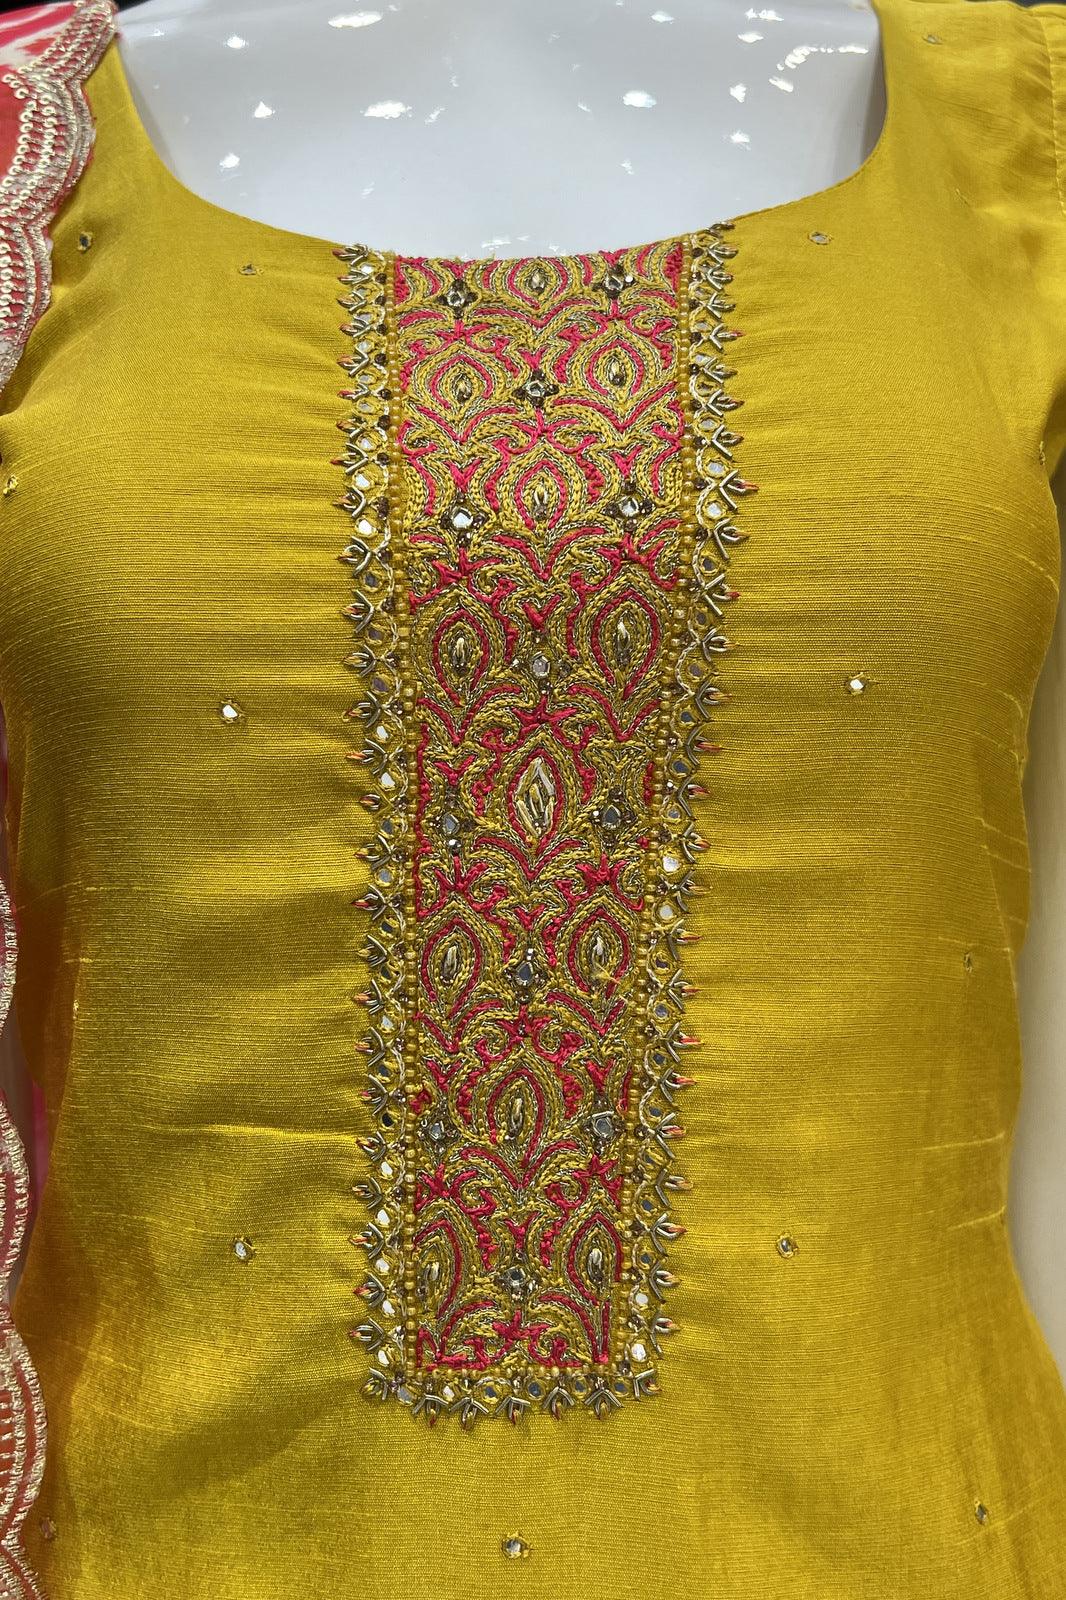 Designer Salwar kameez | Designer Punjab Suits | Pakistani Salwar Kameez |  Organza suits, Salwar kameez designs, Pakistani salwar kameez